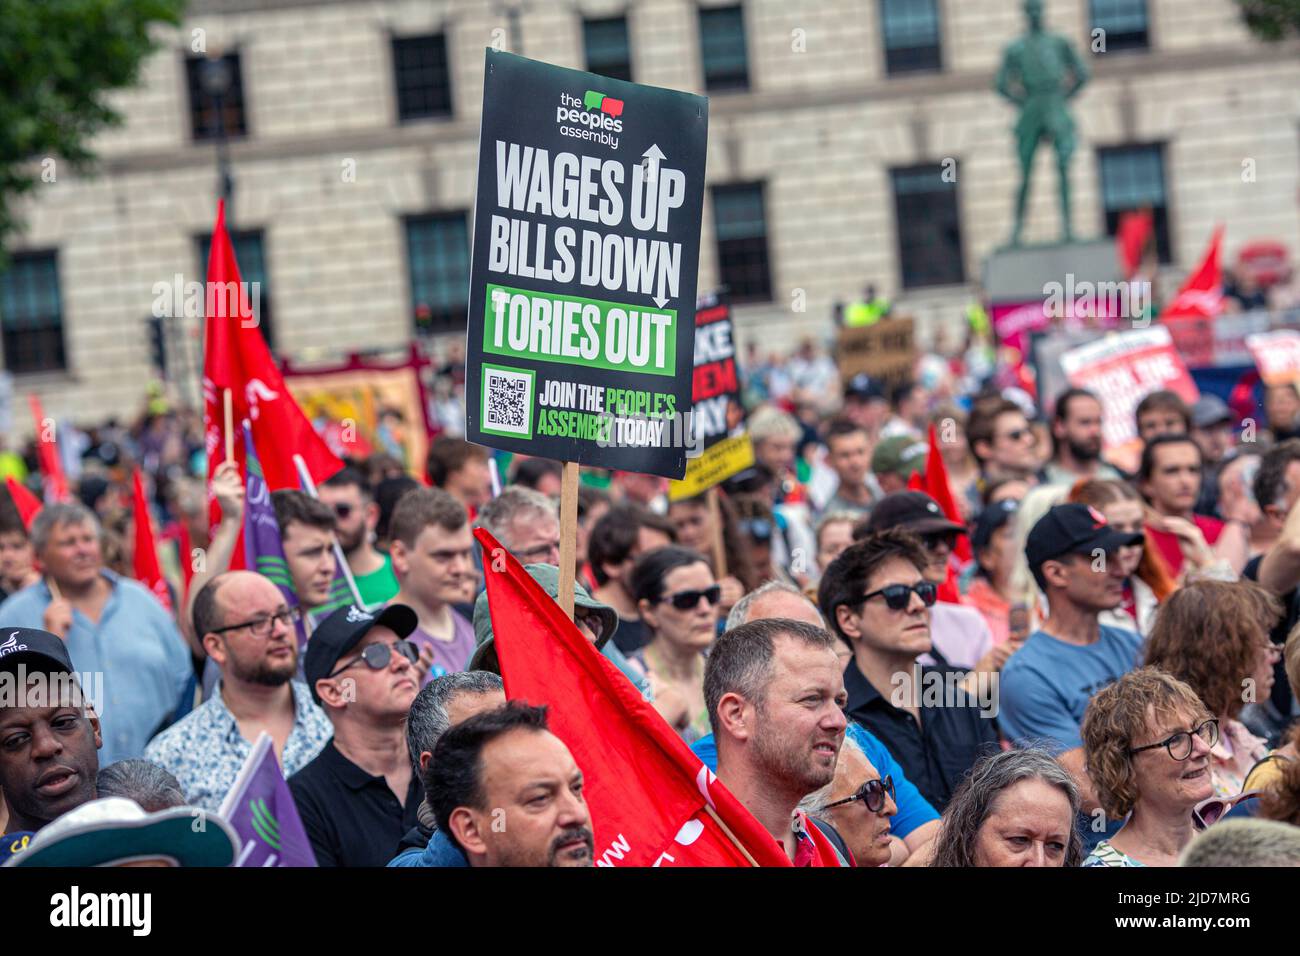 Peopel tese i cartelli mentre prendono parte a una manifestazione nazionale delle TUC nel centro di Londra per chiedere un’azione sul costo della vita, un nuovo accordo per la wor Foto Stock